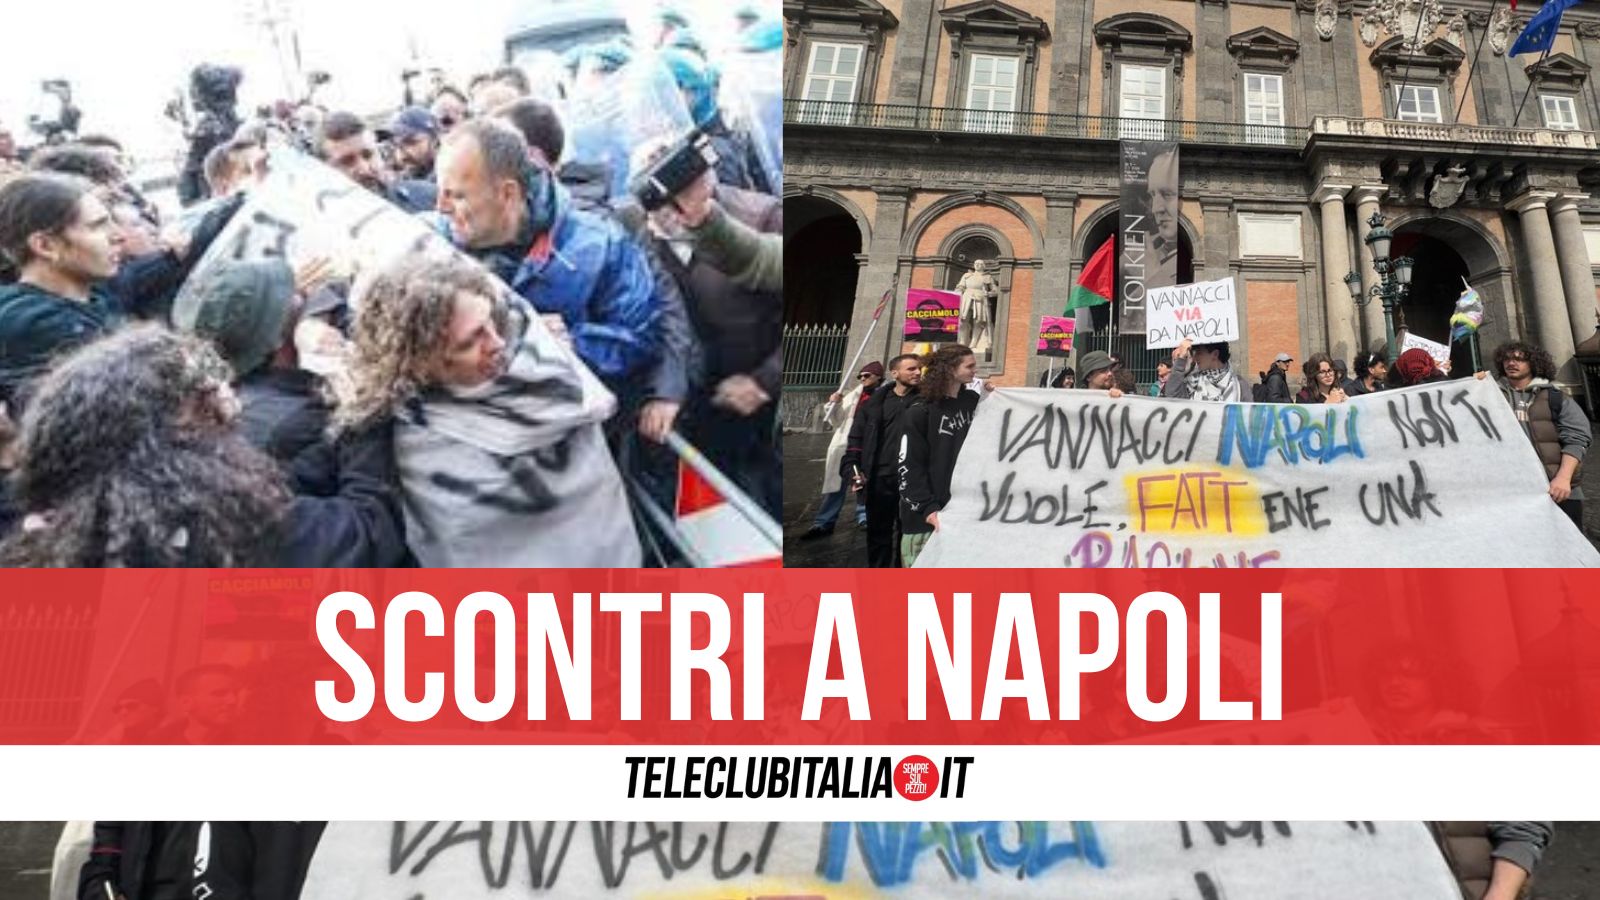 Palloncini d’acqua e scontri all’arrivo di Vannacci a Napoli